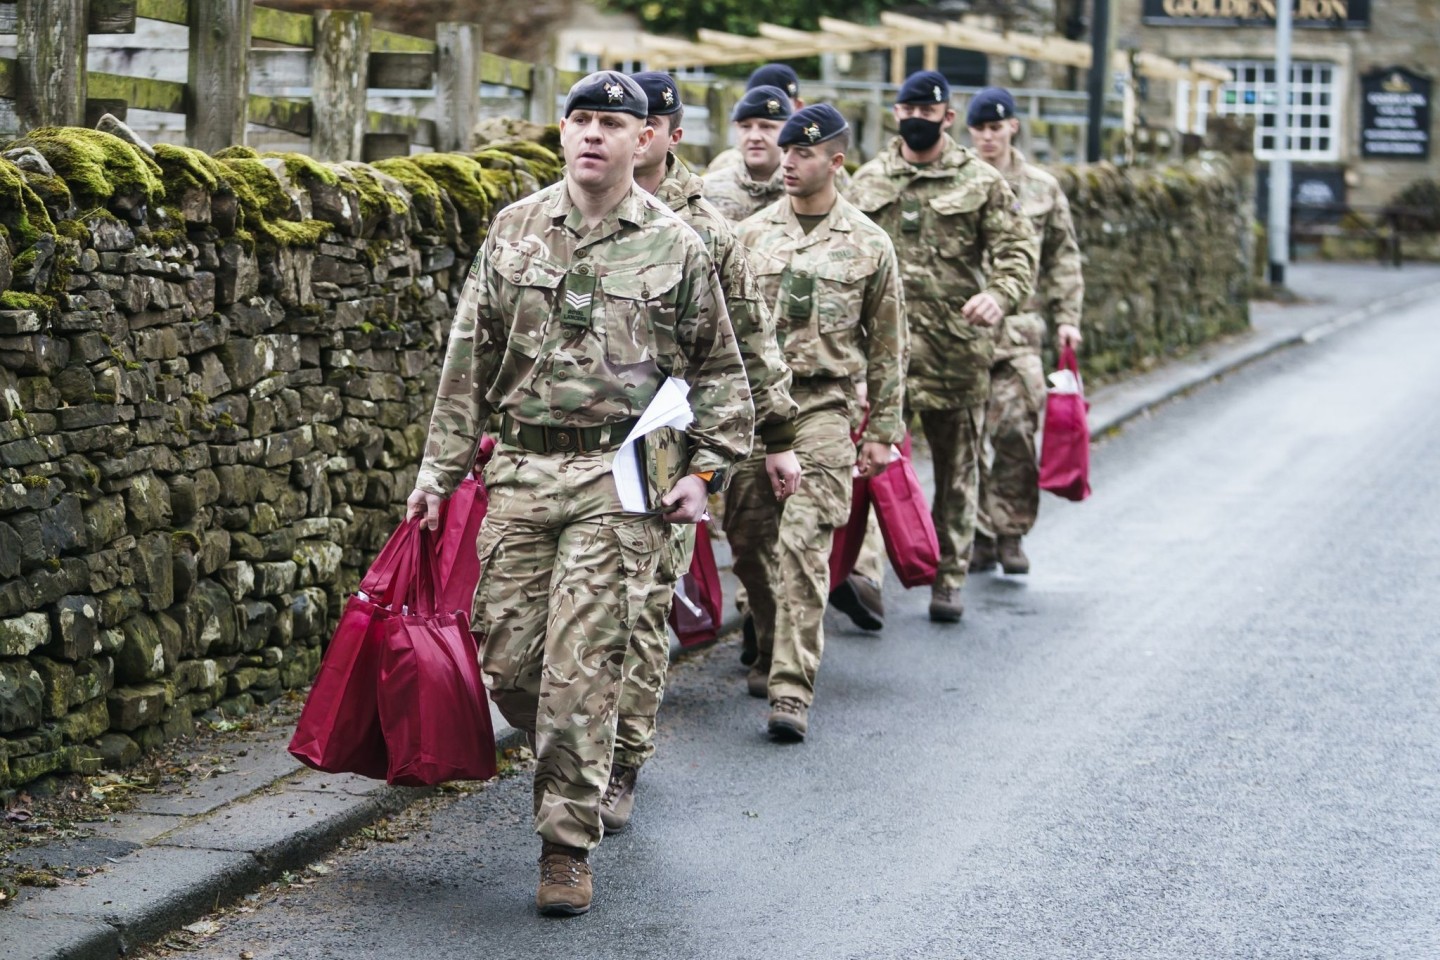 Angehörige der Streitkräfte tragen Versorgungspakete, um sie an Betroffene im britischen St. John's Chapel zu verteilen.